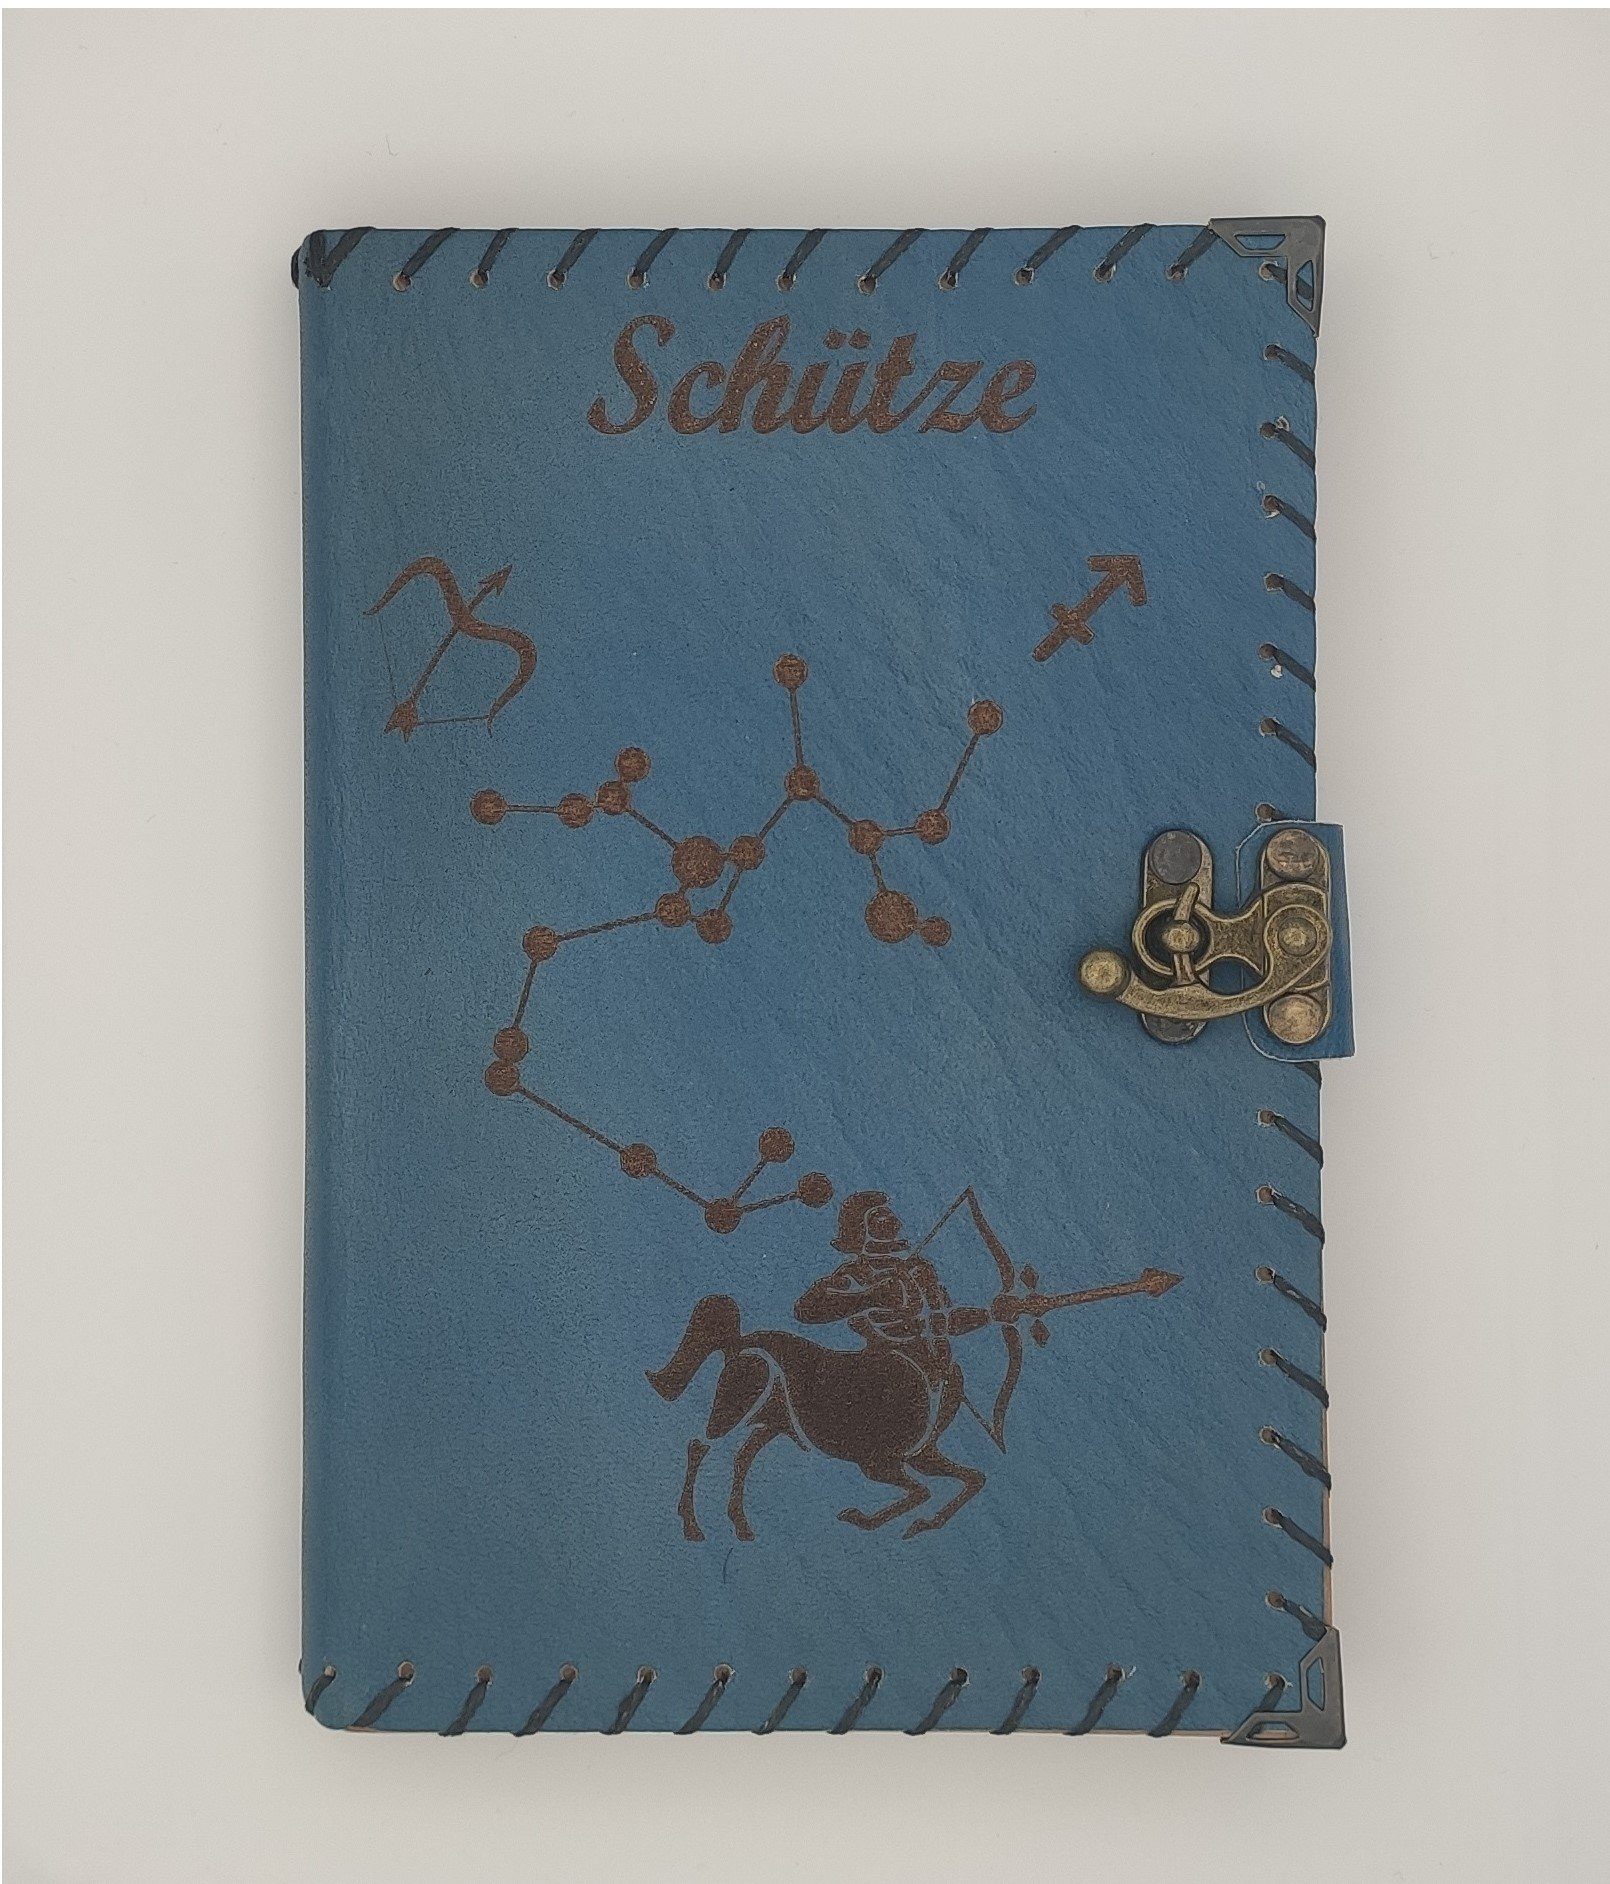 QUAMOD Tagebuch Notizbuch Tagebuch aus echtem Leder (12 Sternzeichen Design) Journal, Handgefertigt Blau